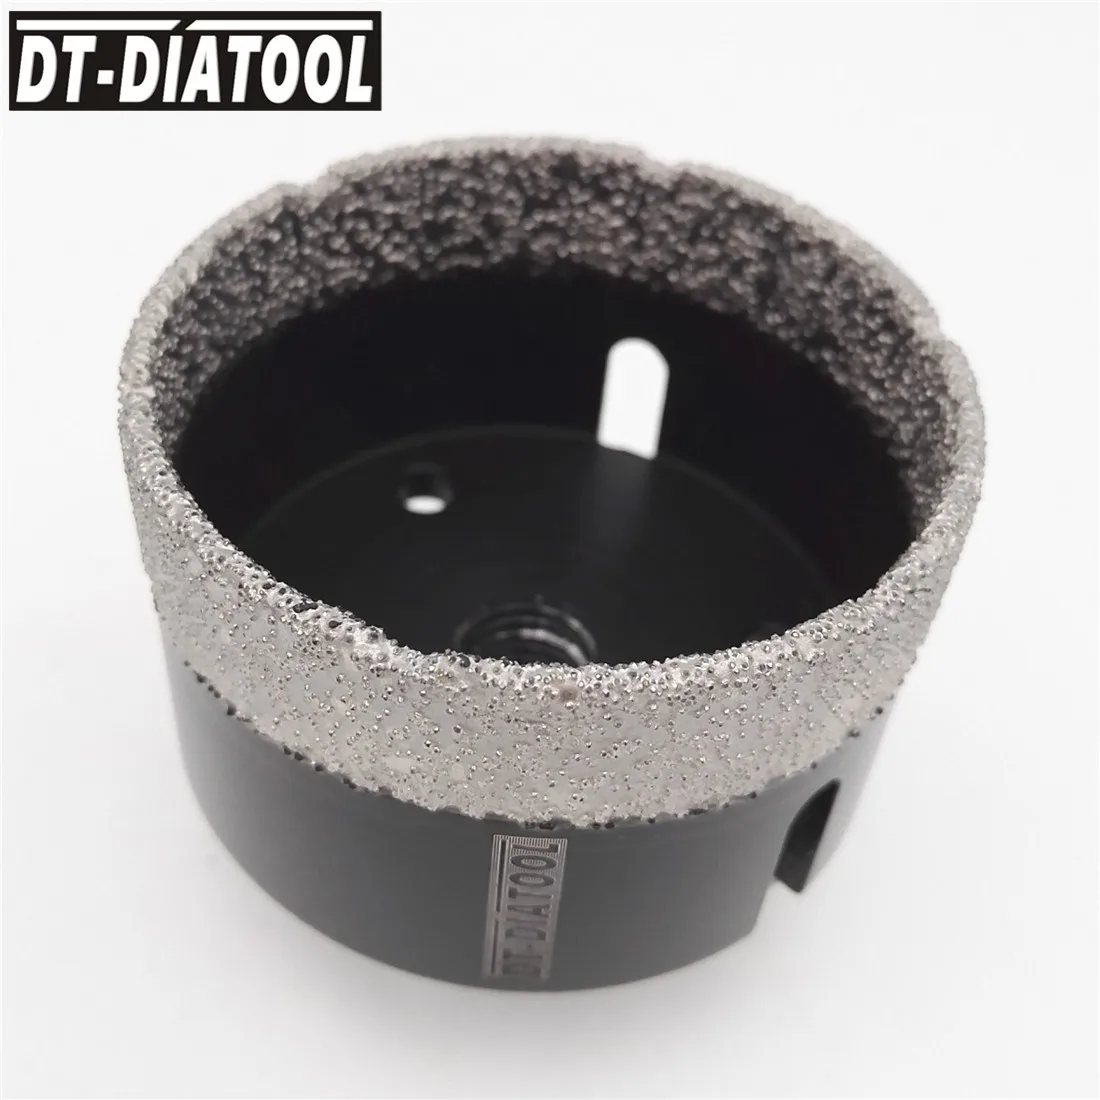 DT-DIATOOL 68 мм сухой вакуумный паяный Алмазный сверлильный сердечник кольцевая пила Профессиональный сверлильный гранит мраморная плитка рез... от AliExpress RU&CIS NEW